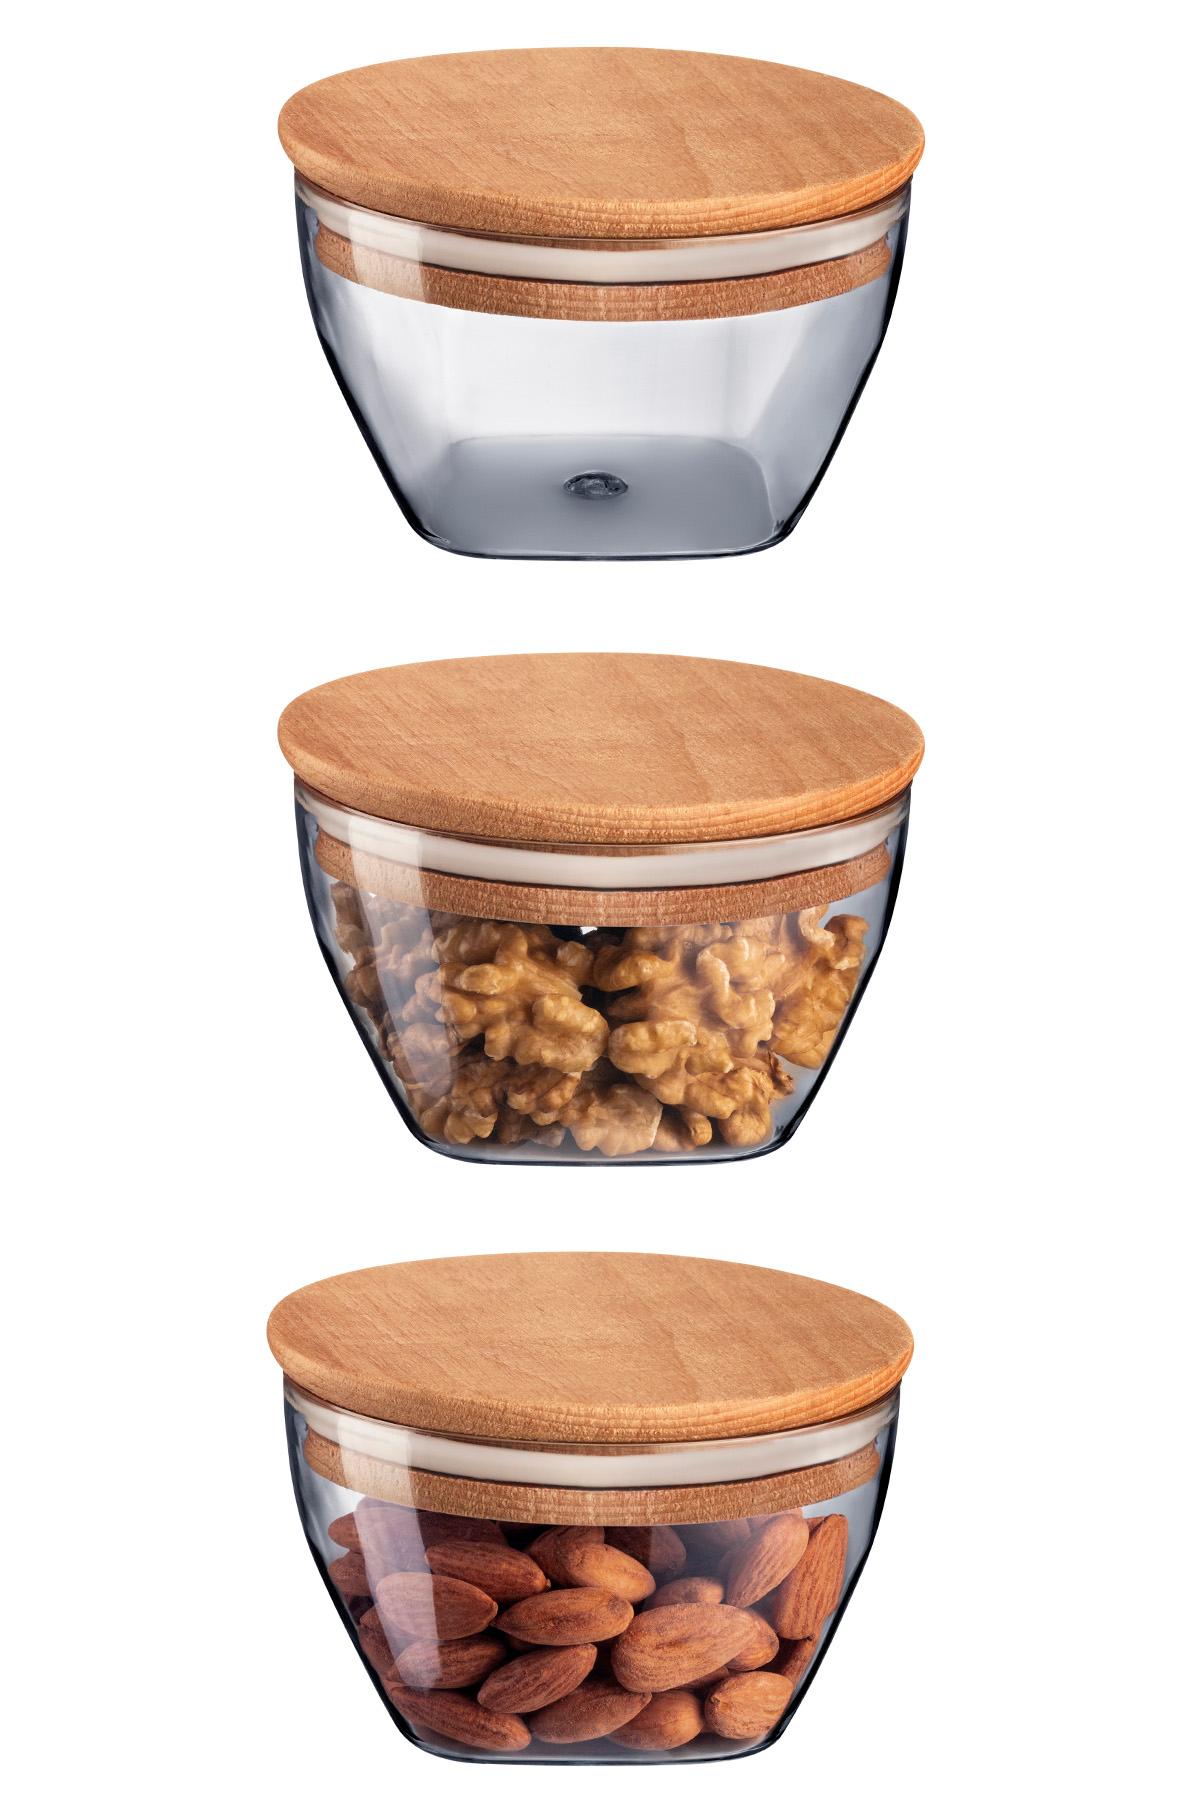 MADAME COCO Florian Set kutija za čuvanje hrane sa drvenim poklopcem, 3kom, 380ml, 10.5x10.5x7cm, Sive